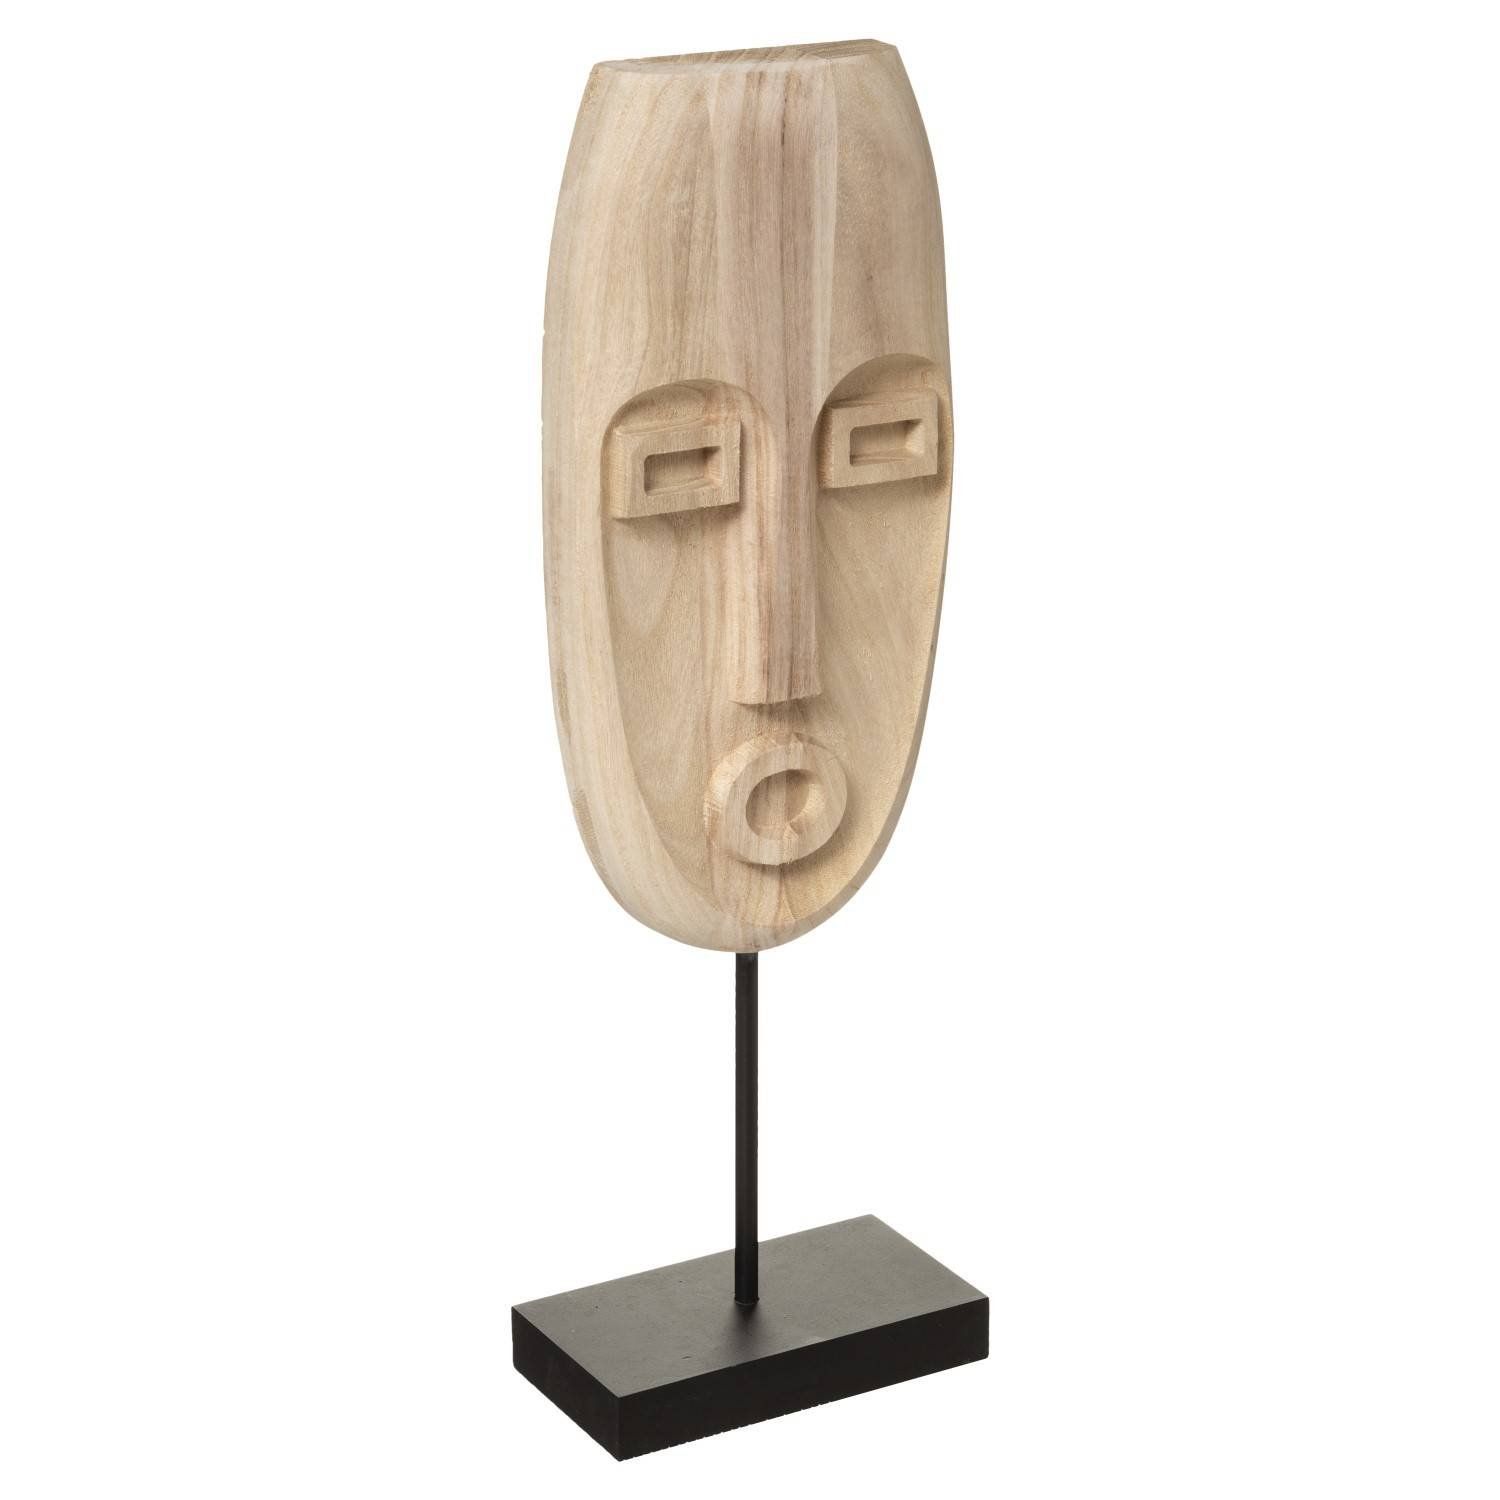 Atmosphera Dřevěná maska SAFARI, etnický motiv, přírodní hnědá, výška 46,5 cm - EMAKO.CZ s.r.o.